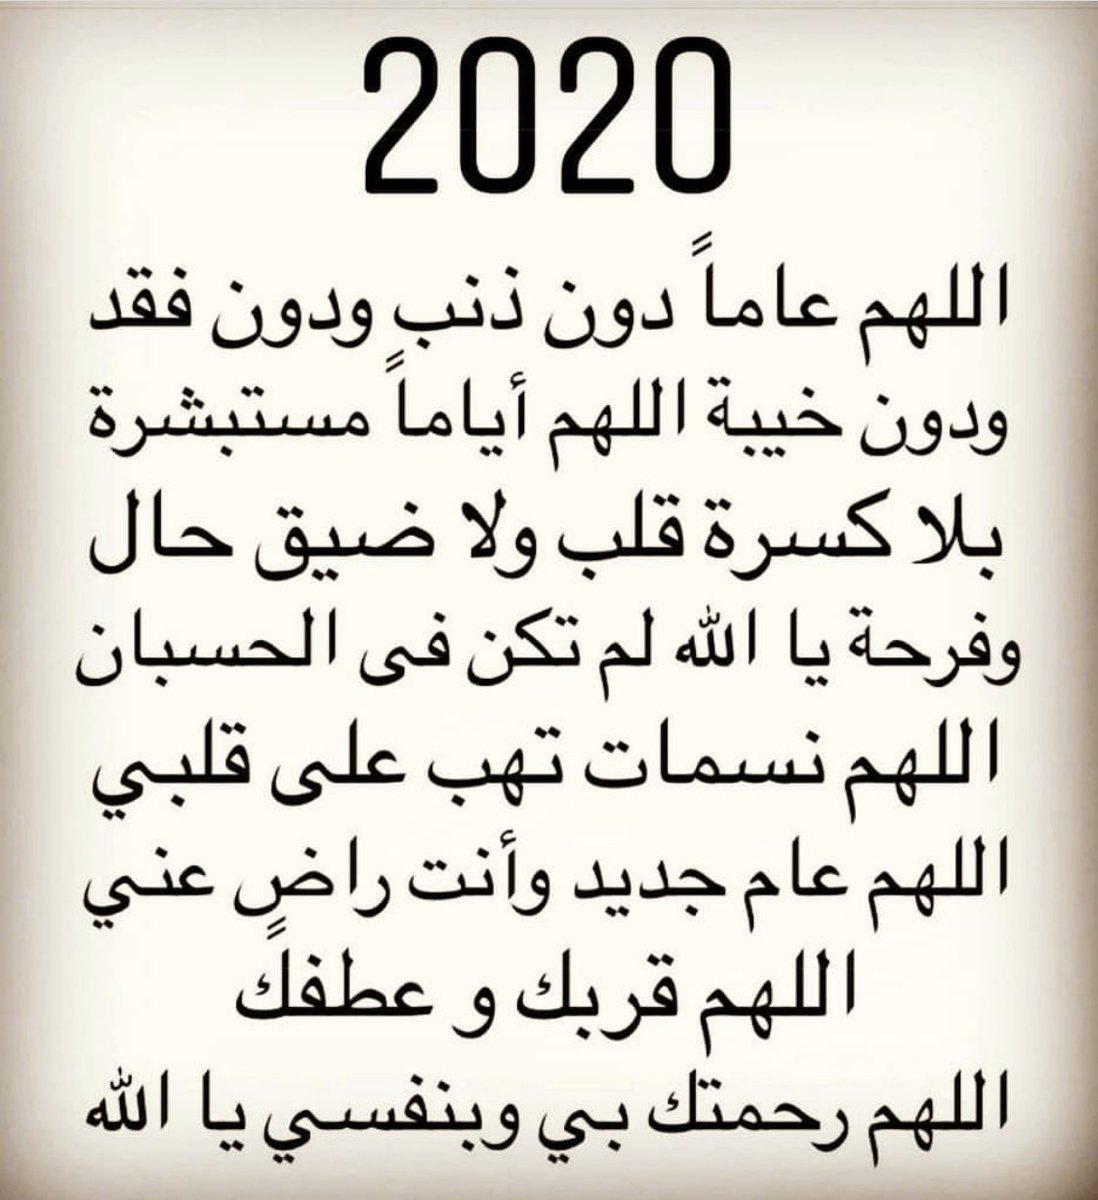 اجمل دعاء للسنة الجديدة 2020 دعاء دخول العام الجديد 2020 م